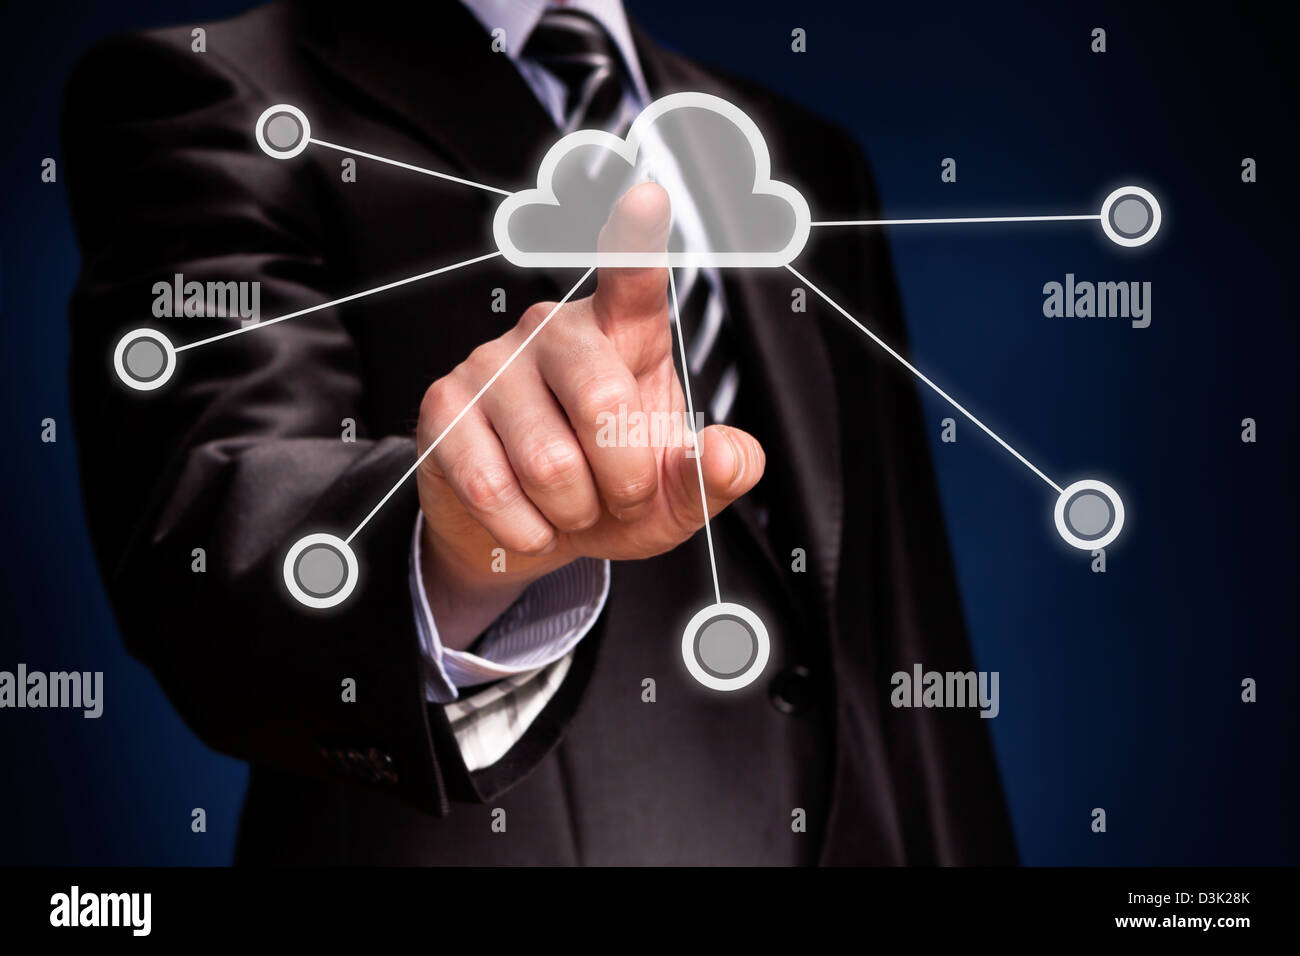 Affichage futuriste : Cloud computing interface écran tactile Banque D'Images